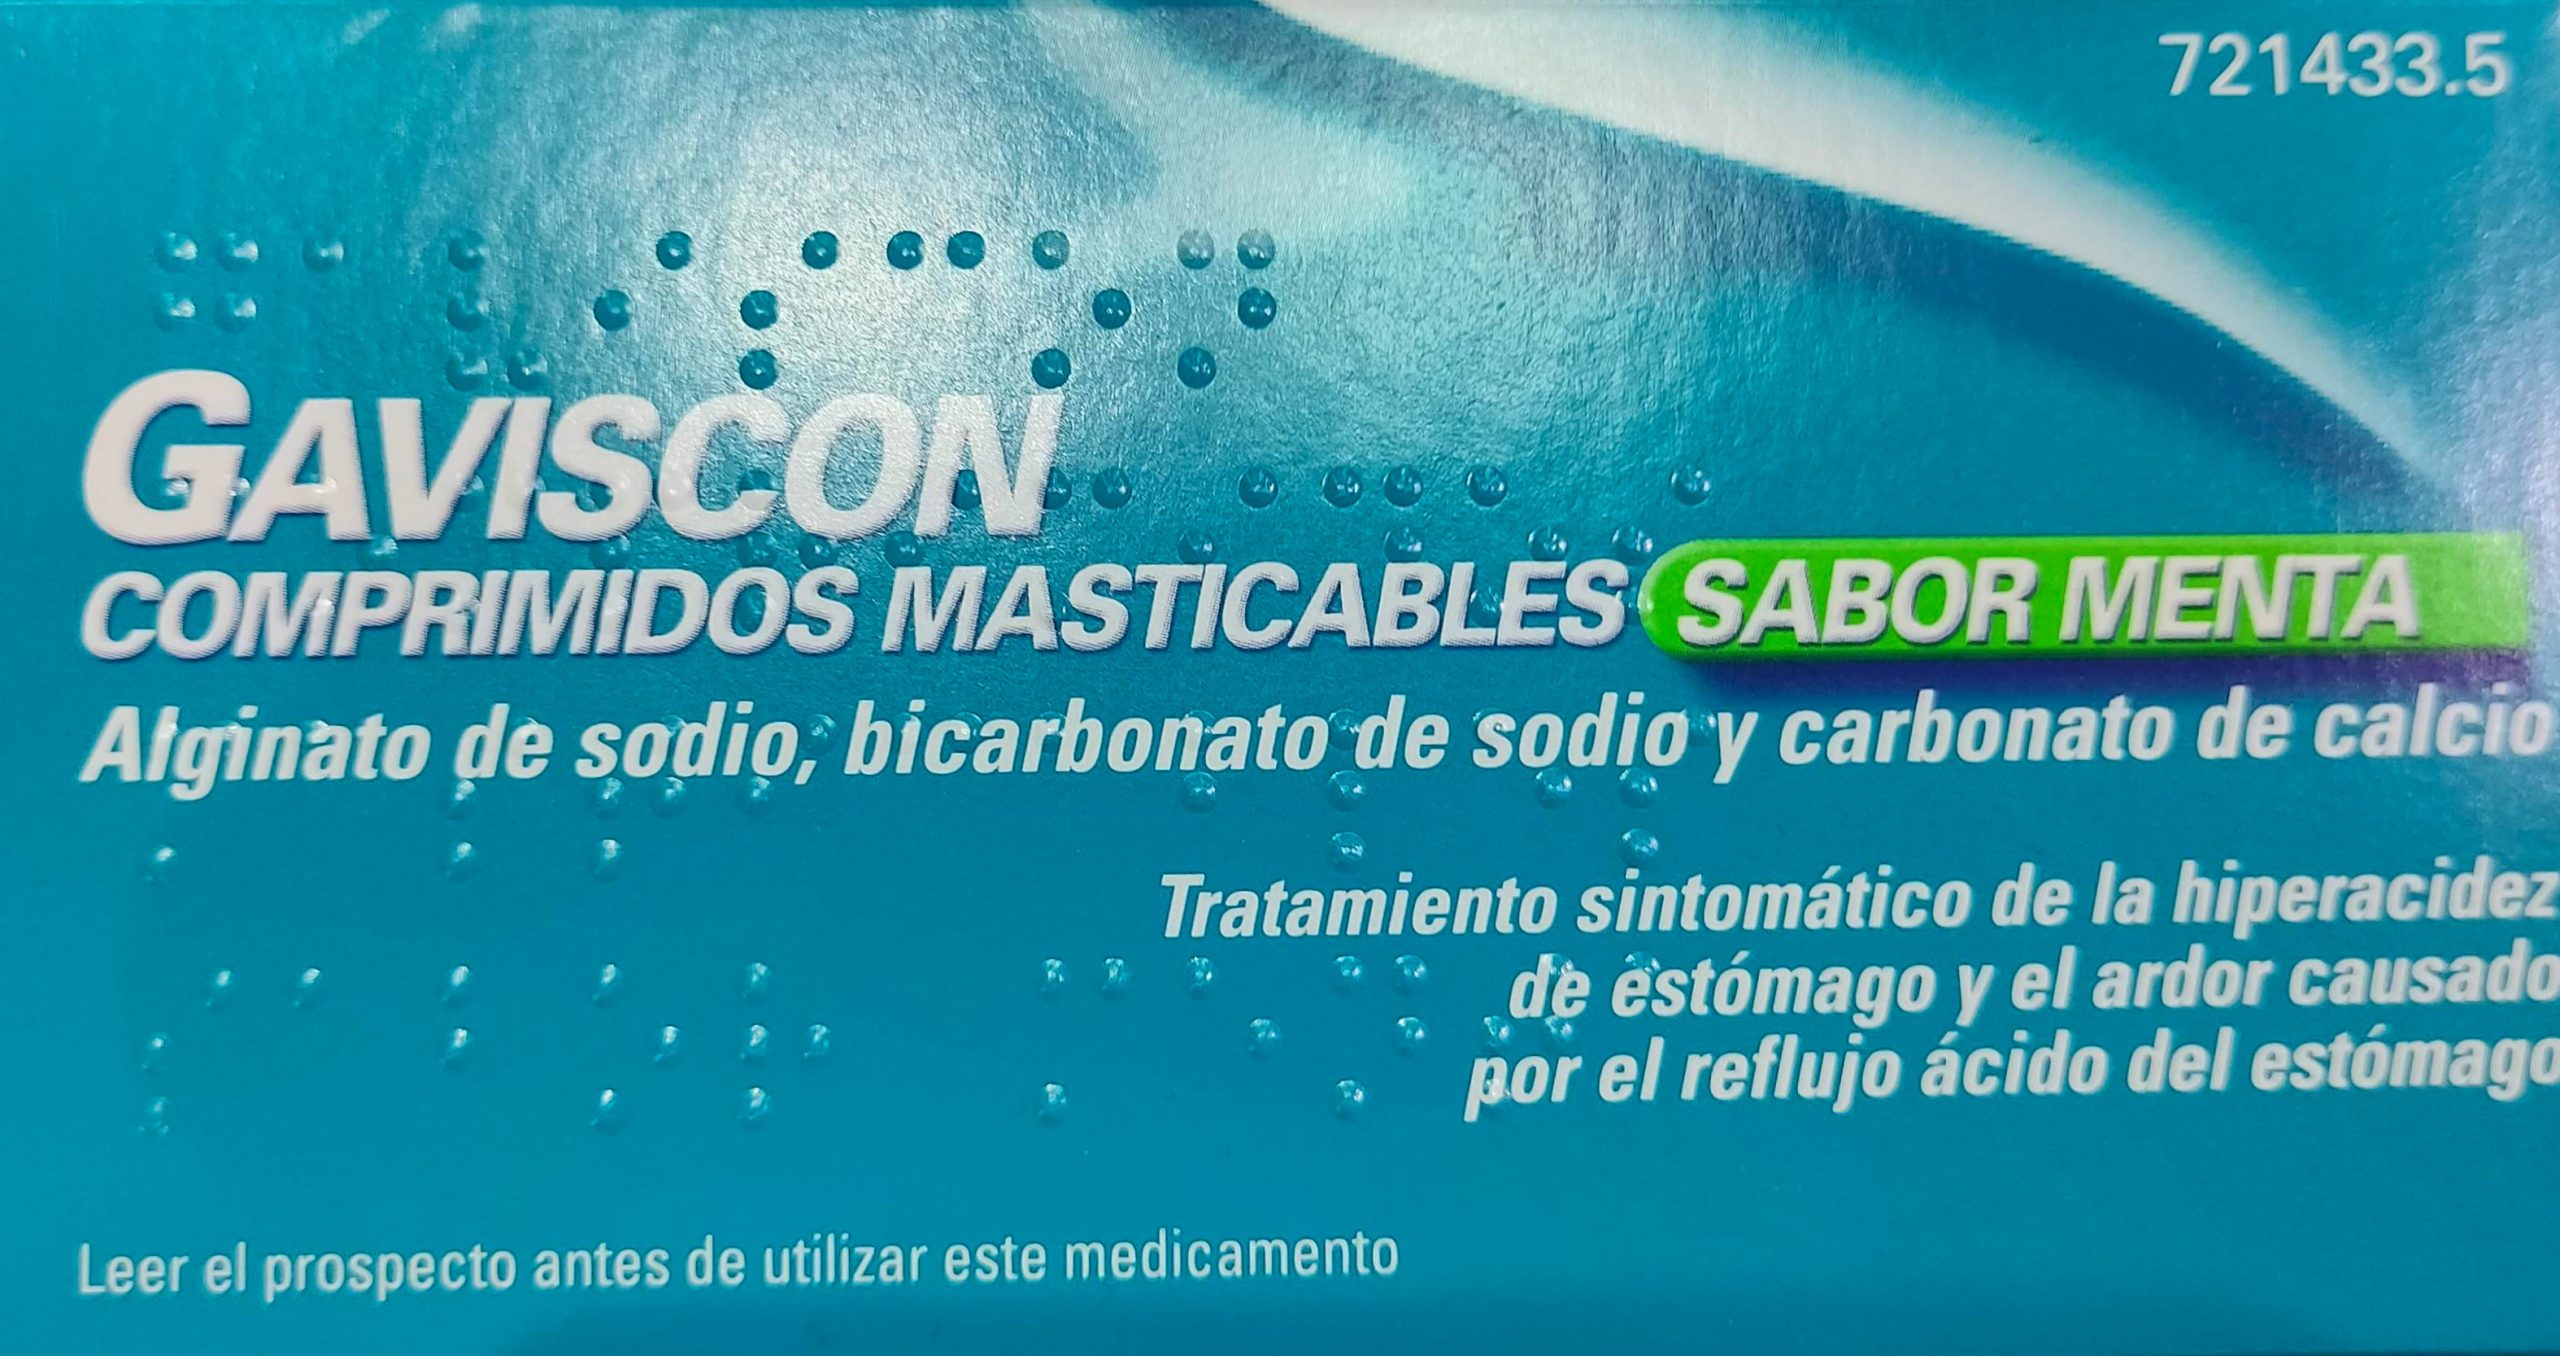 Gaviscon Forte alivia los síntomas asociados a la acidez de estómago y el ardor causado por el reflujo gástrico Gaviscon Forte está indicado para el tratamiento sintomático de la hiperacidez